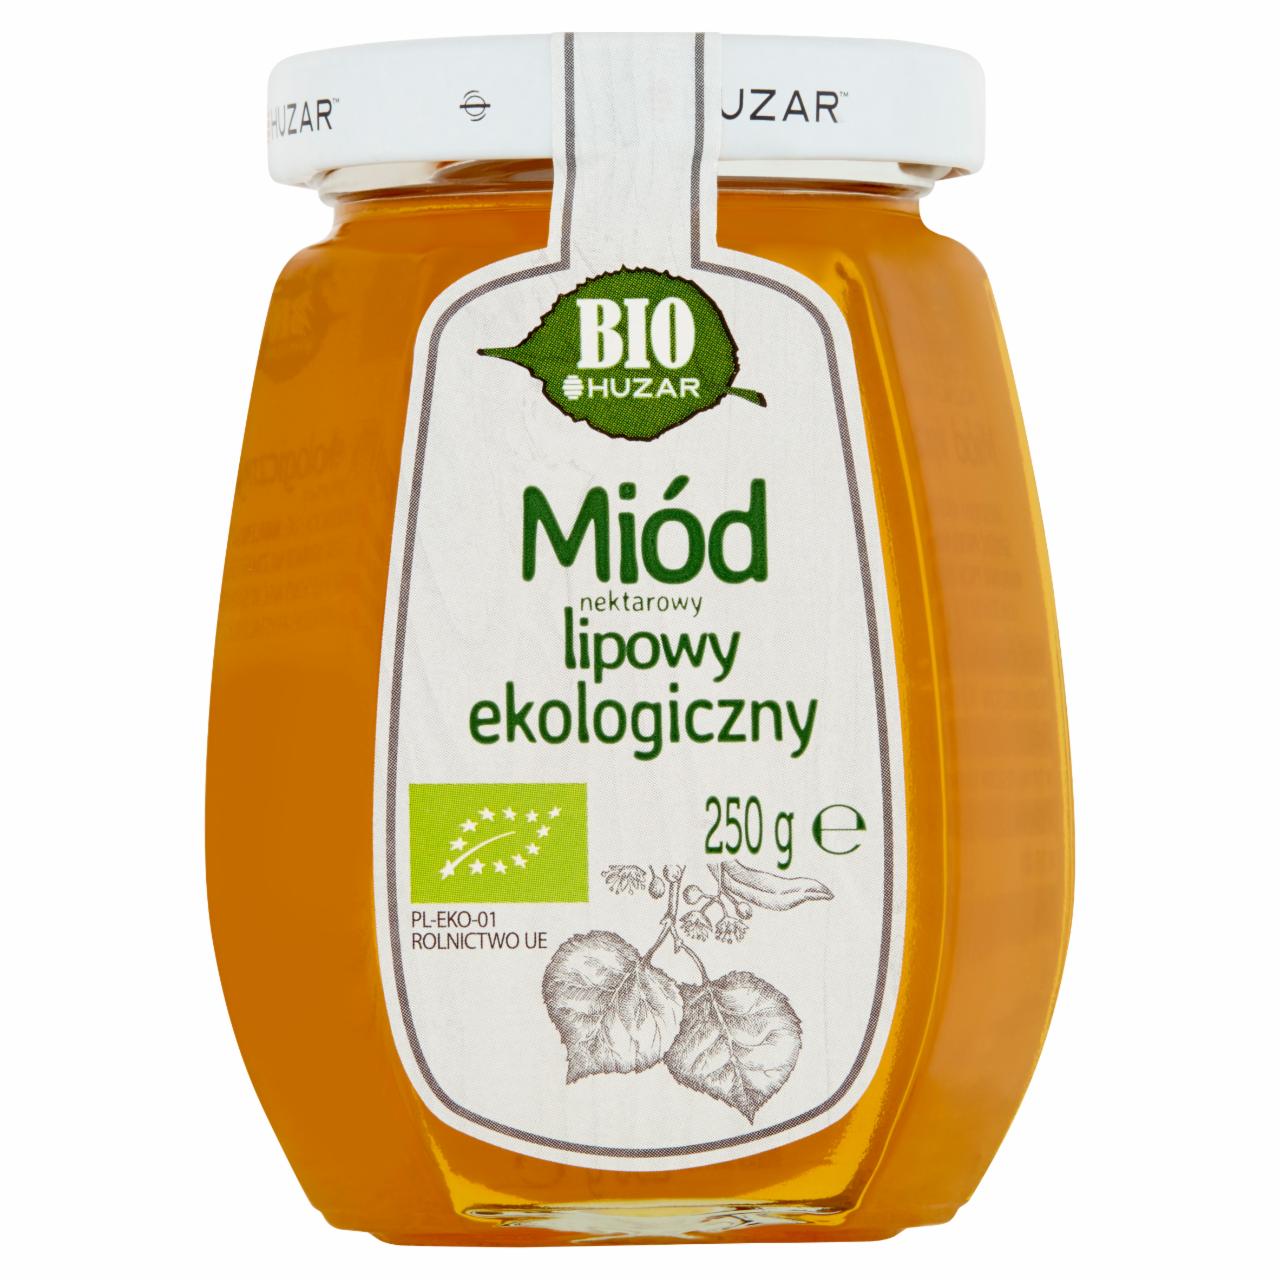 Zdjęcia - Huzar Bio Miód nektarowy lipowy ekologiczny 250 g